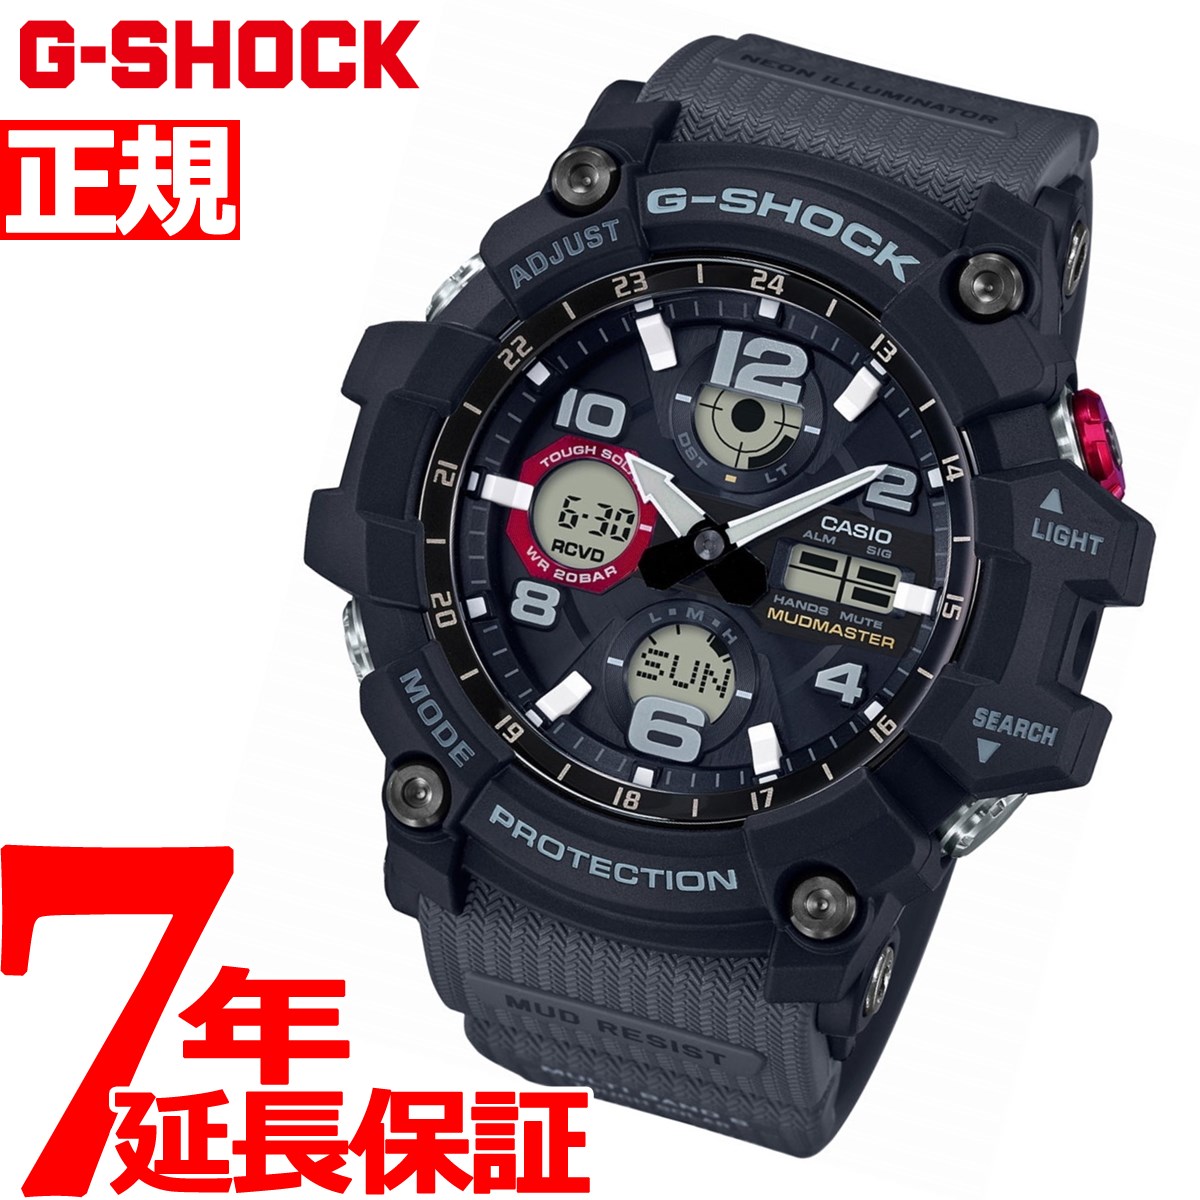 【楽天市場】G-SHOCK 電波 ソーラー 電波時計 カシオ Gショック マッドマスター MUDMASTER 腕時計 メンズ MASTER